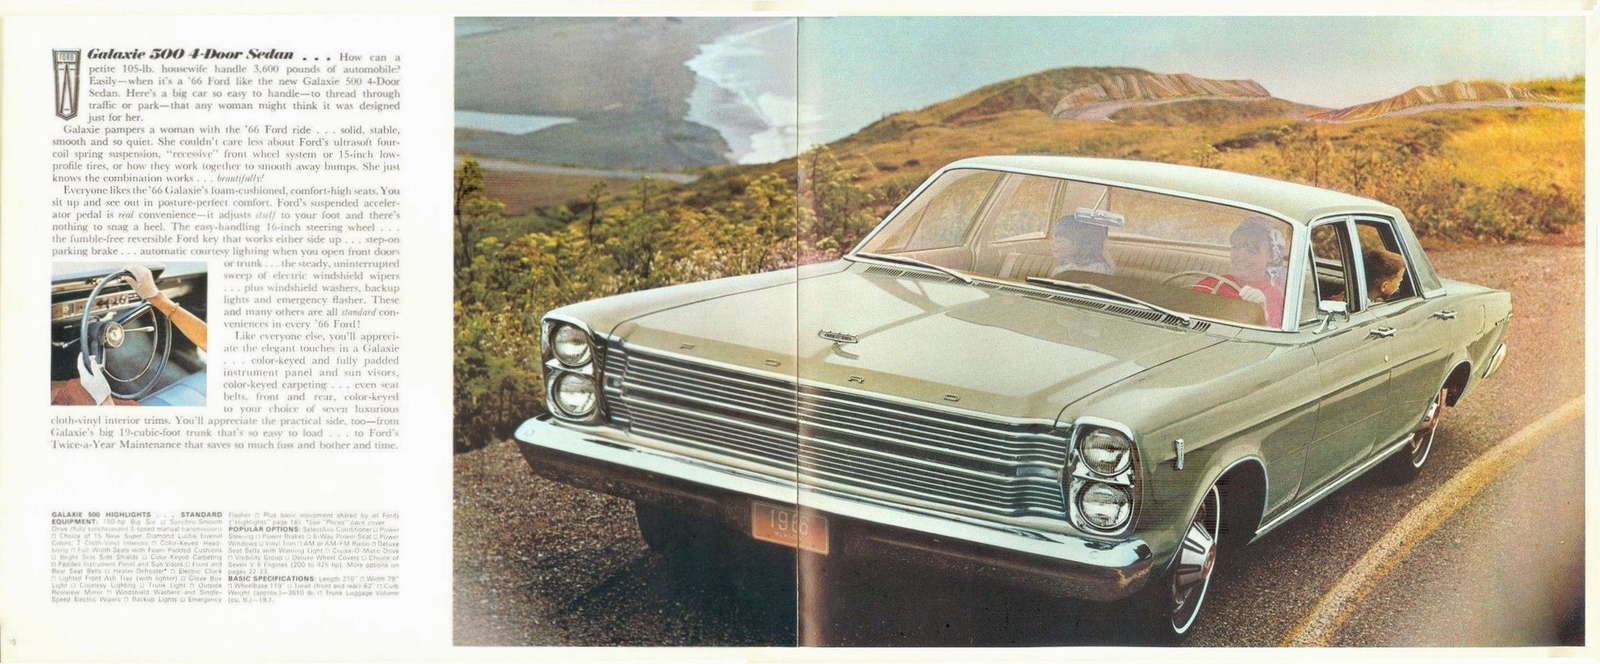 n_1966 Ford Full Size-16-17.jpg